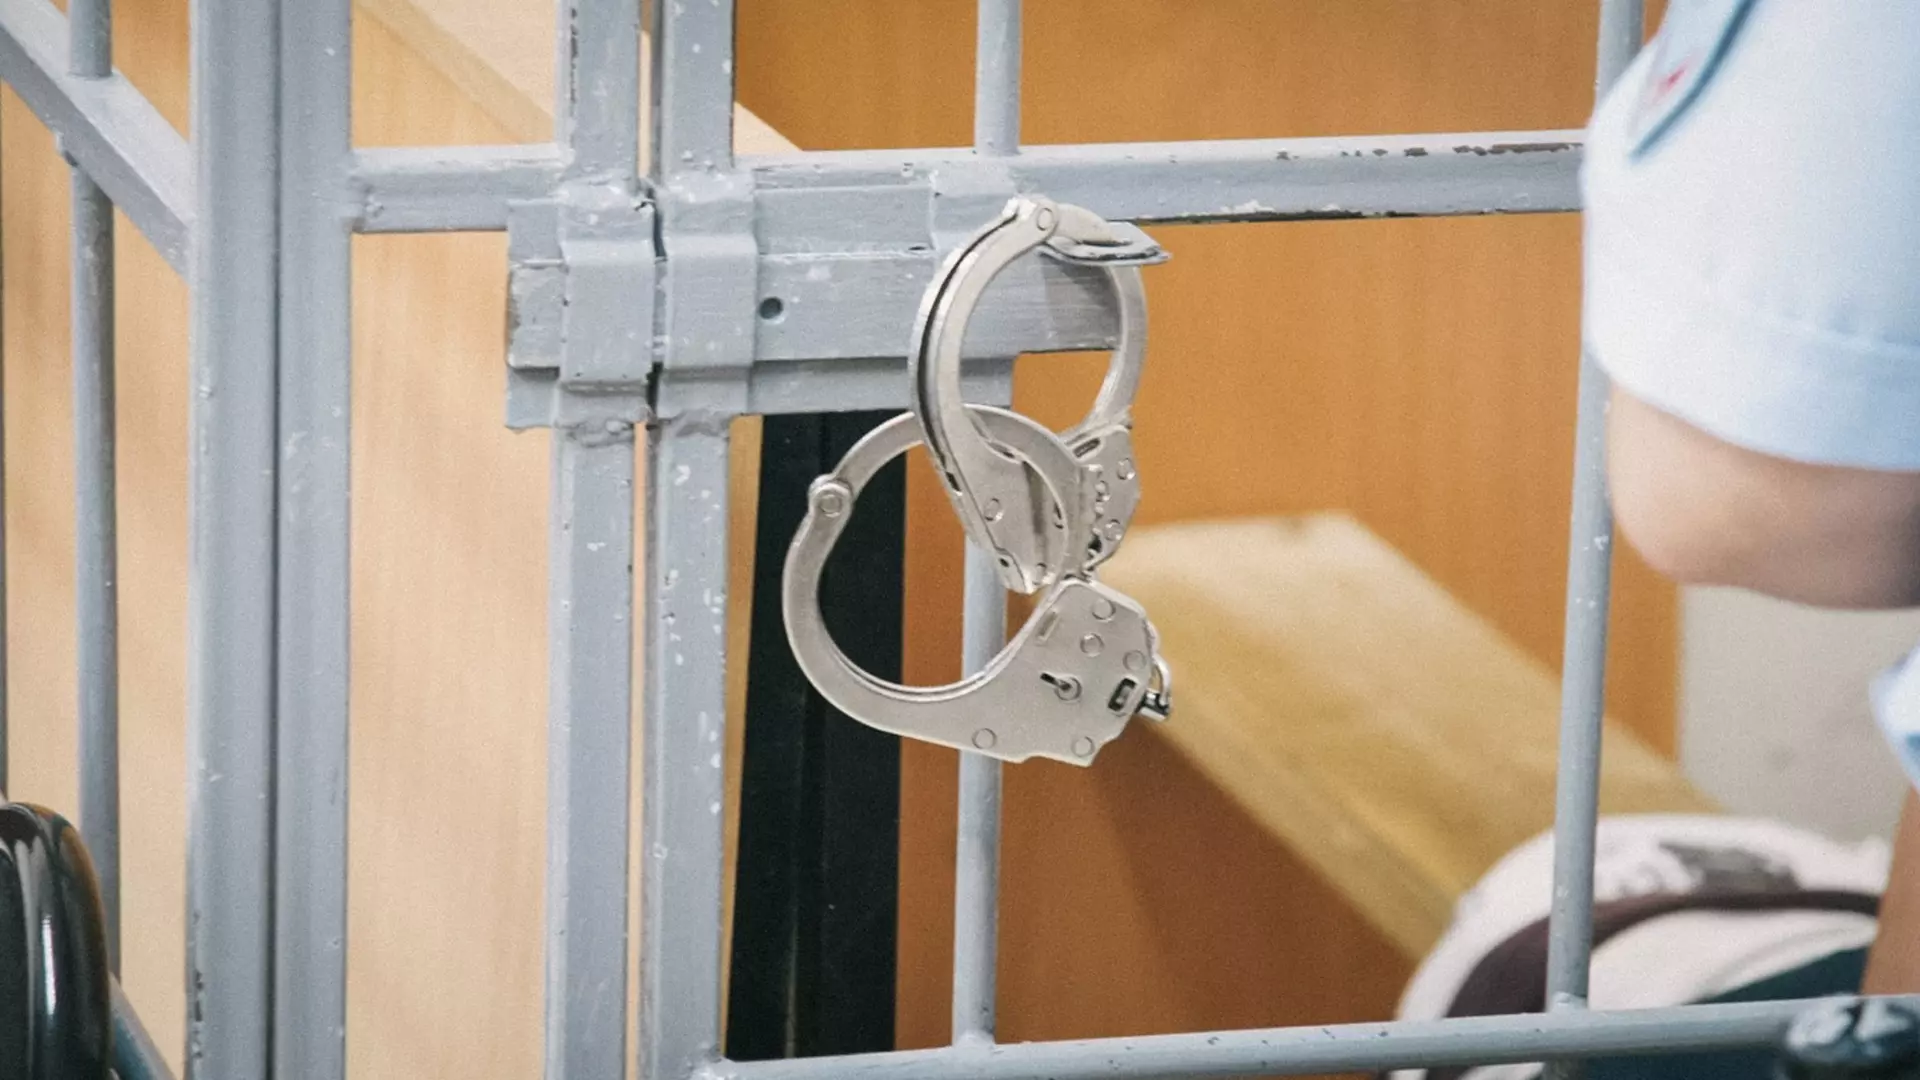 Полиция Коркино задержала подозреваемого в фатальном избиении